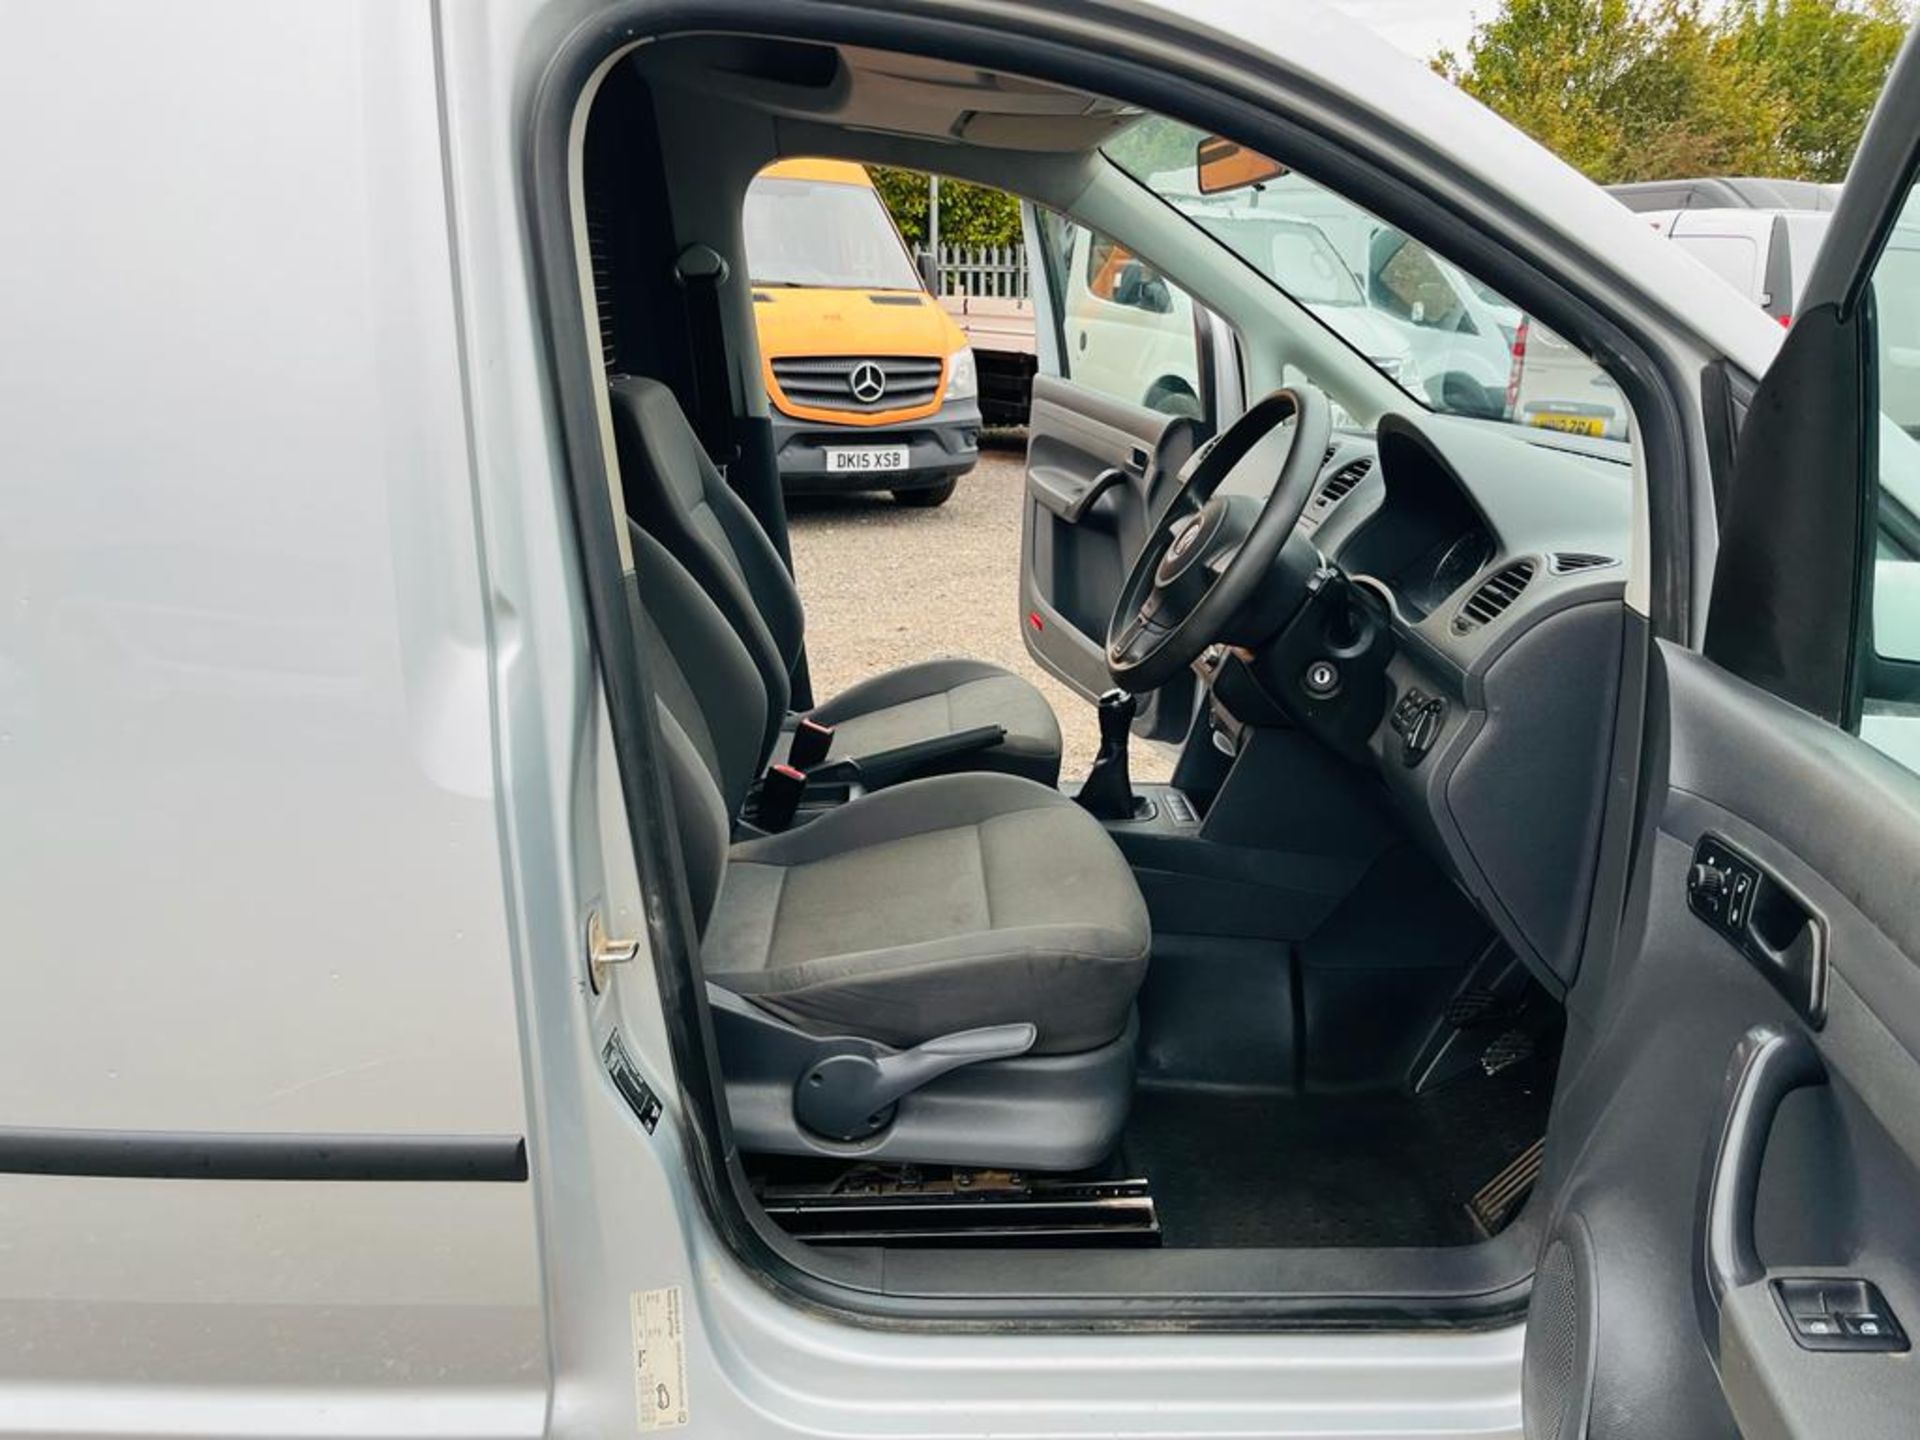 Volkswagon Caddy C20 1.6 TDI 102 Trendline Van 2015 '15 Reg' - Panel Van - Image 16 of 27